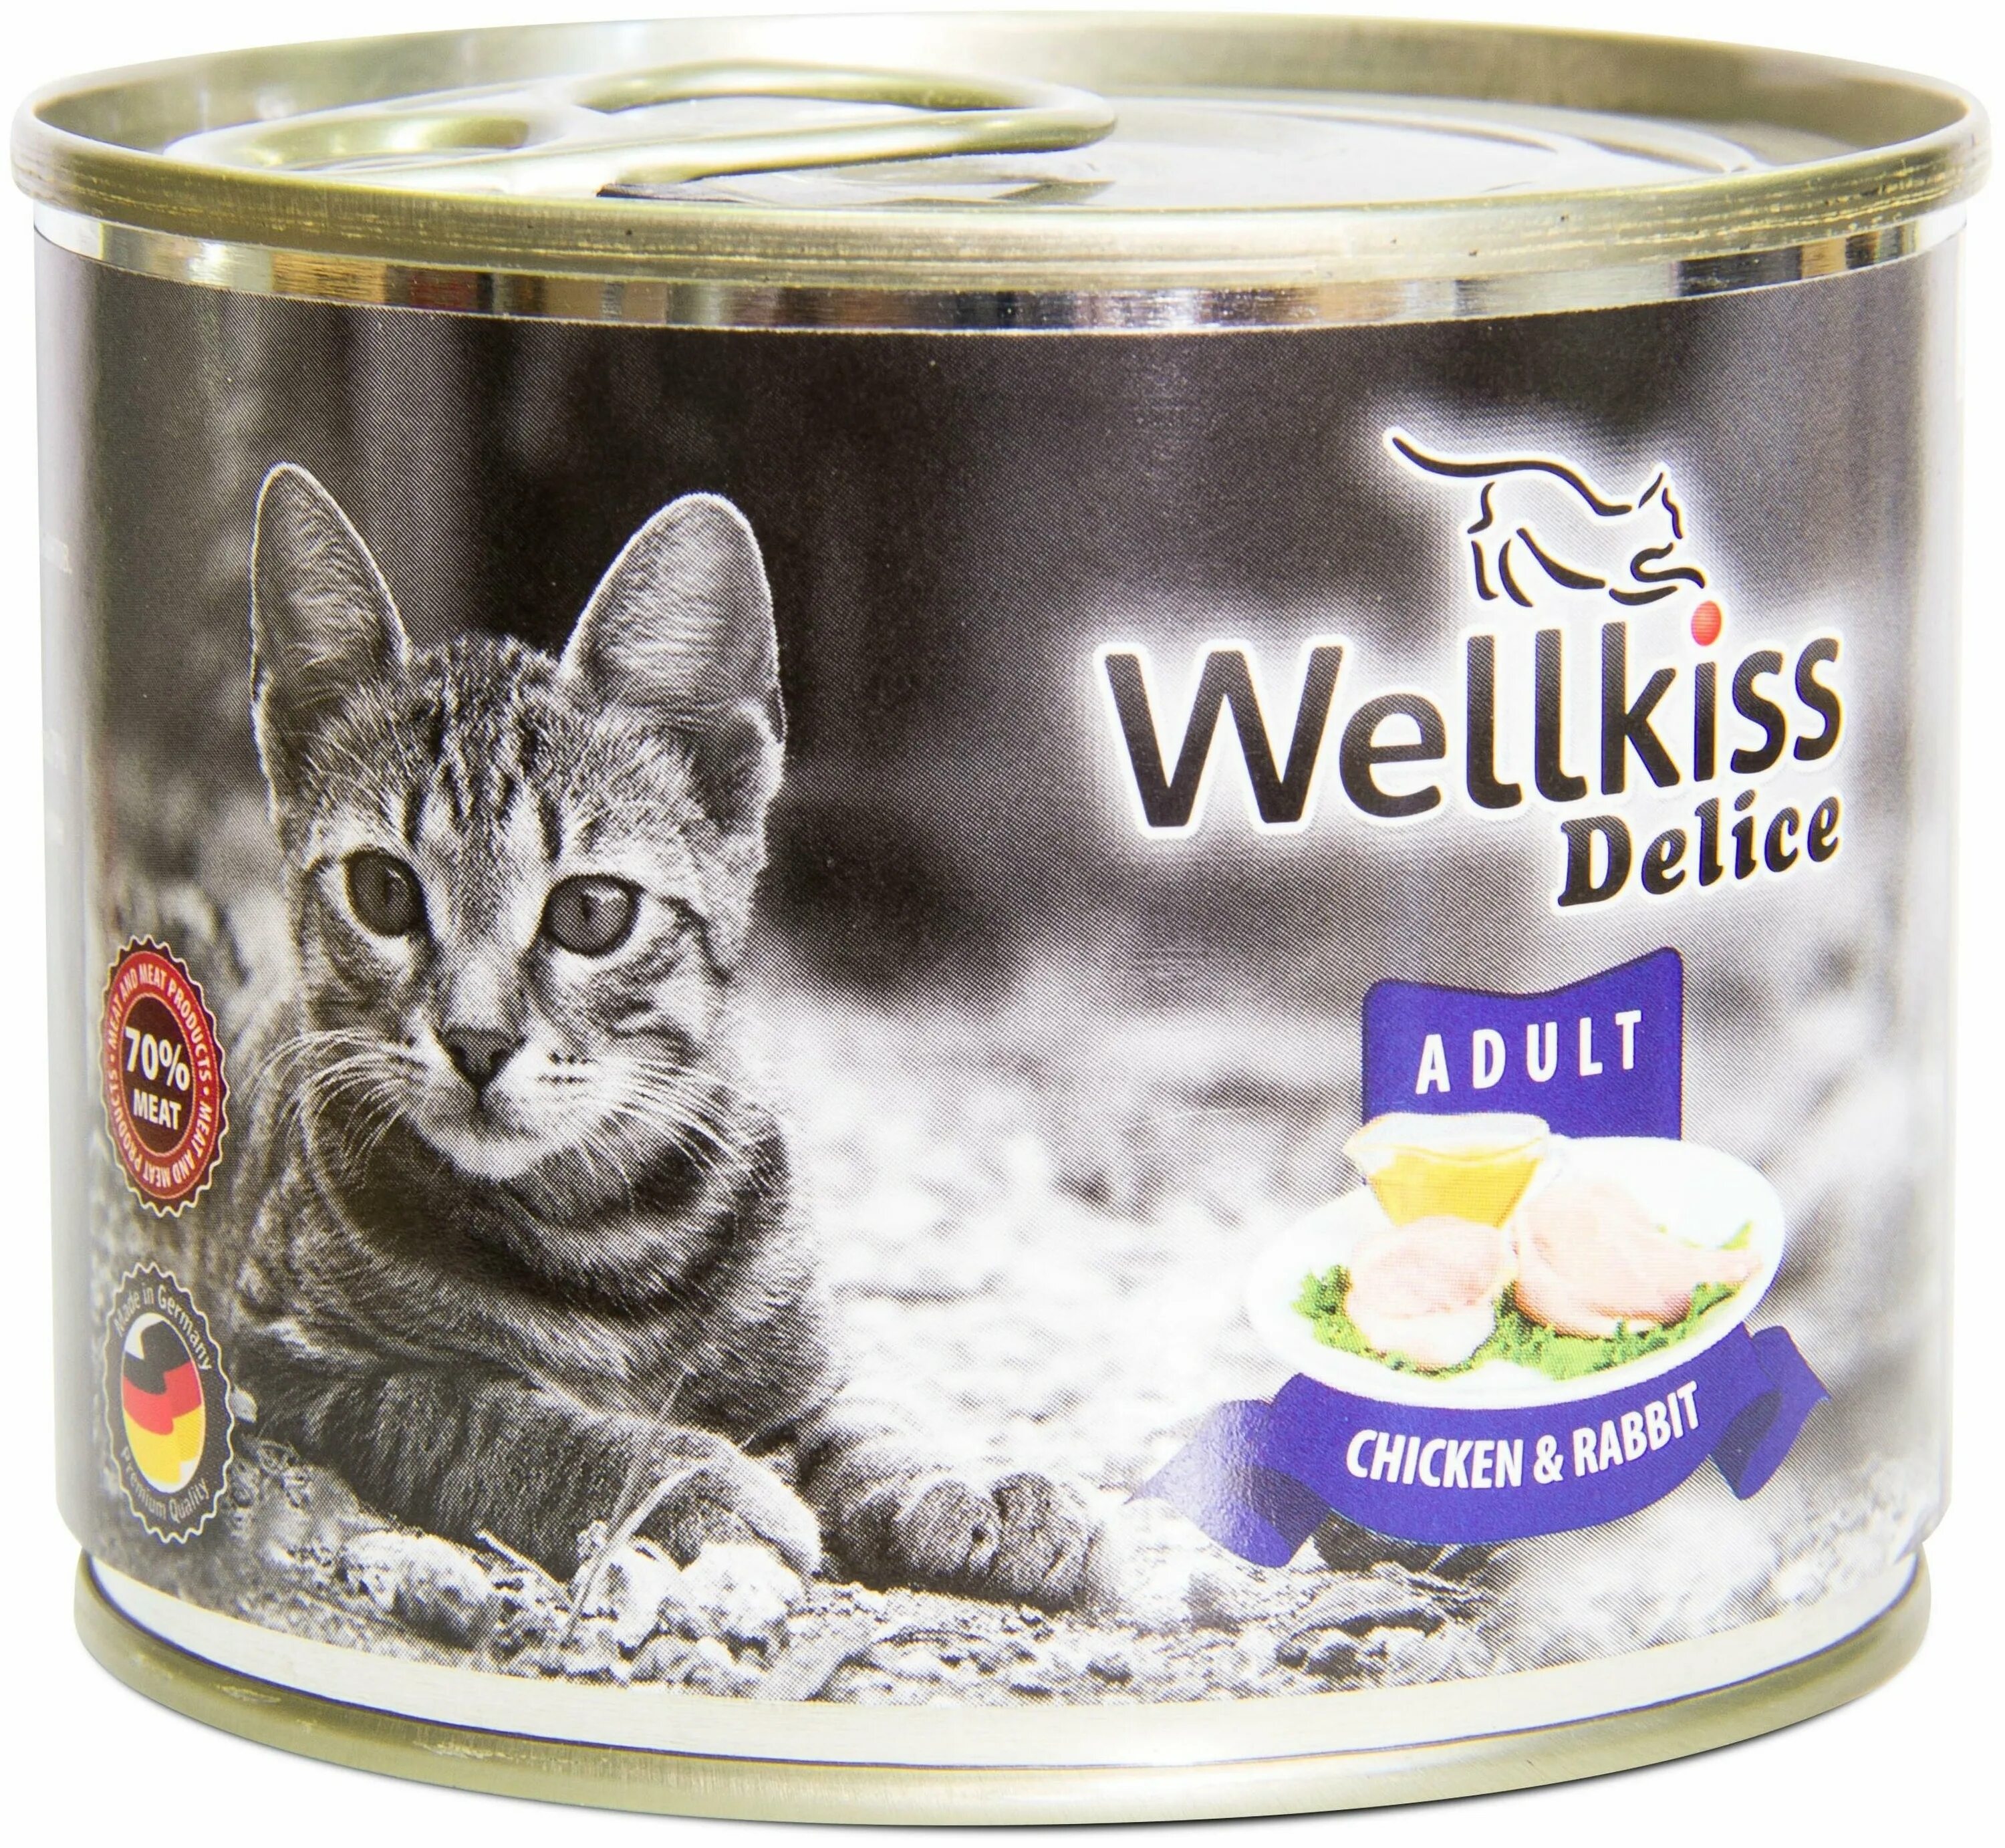 Влажный корм для кошек утка. Wellkiss Delice. Wellkiss влажный корм. Wellkiss Delice консервы. Wellkiss корм для кошек влажный с индейкой.